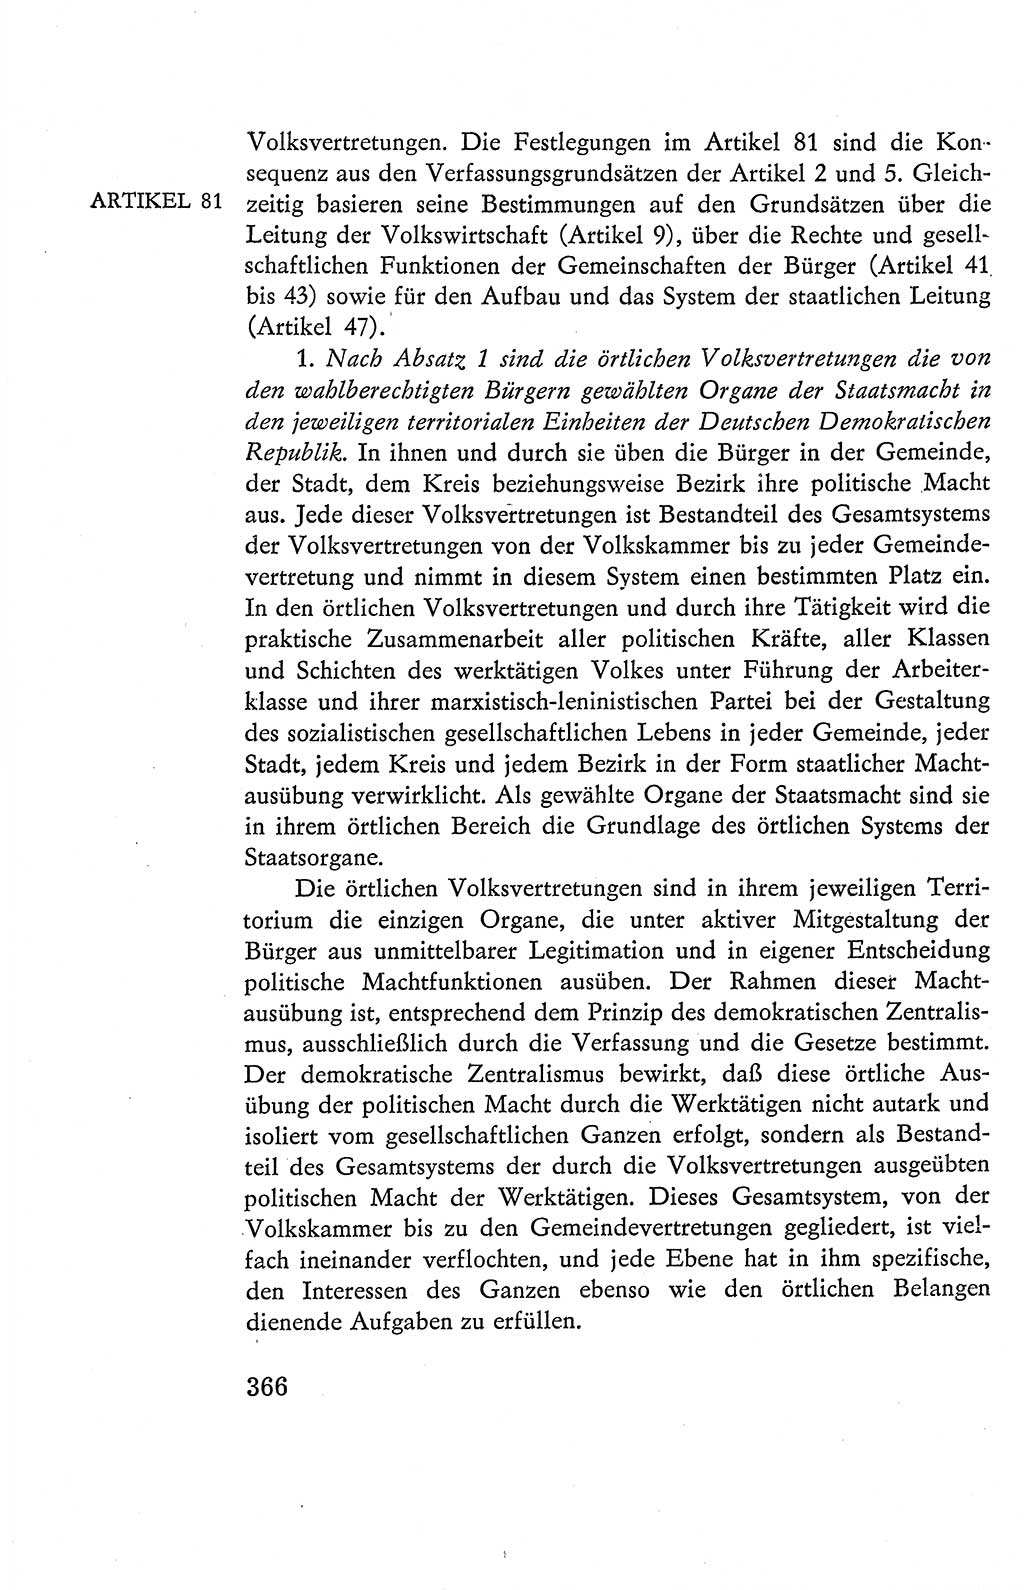 Verfassung der Deutschen Demokratischen Republik (DDR), Dokumente, Kommentar 1969, Band 2, Seite 366 (Verf. DDR Dok. Komm. 1969, Bd. 2, S. 366)